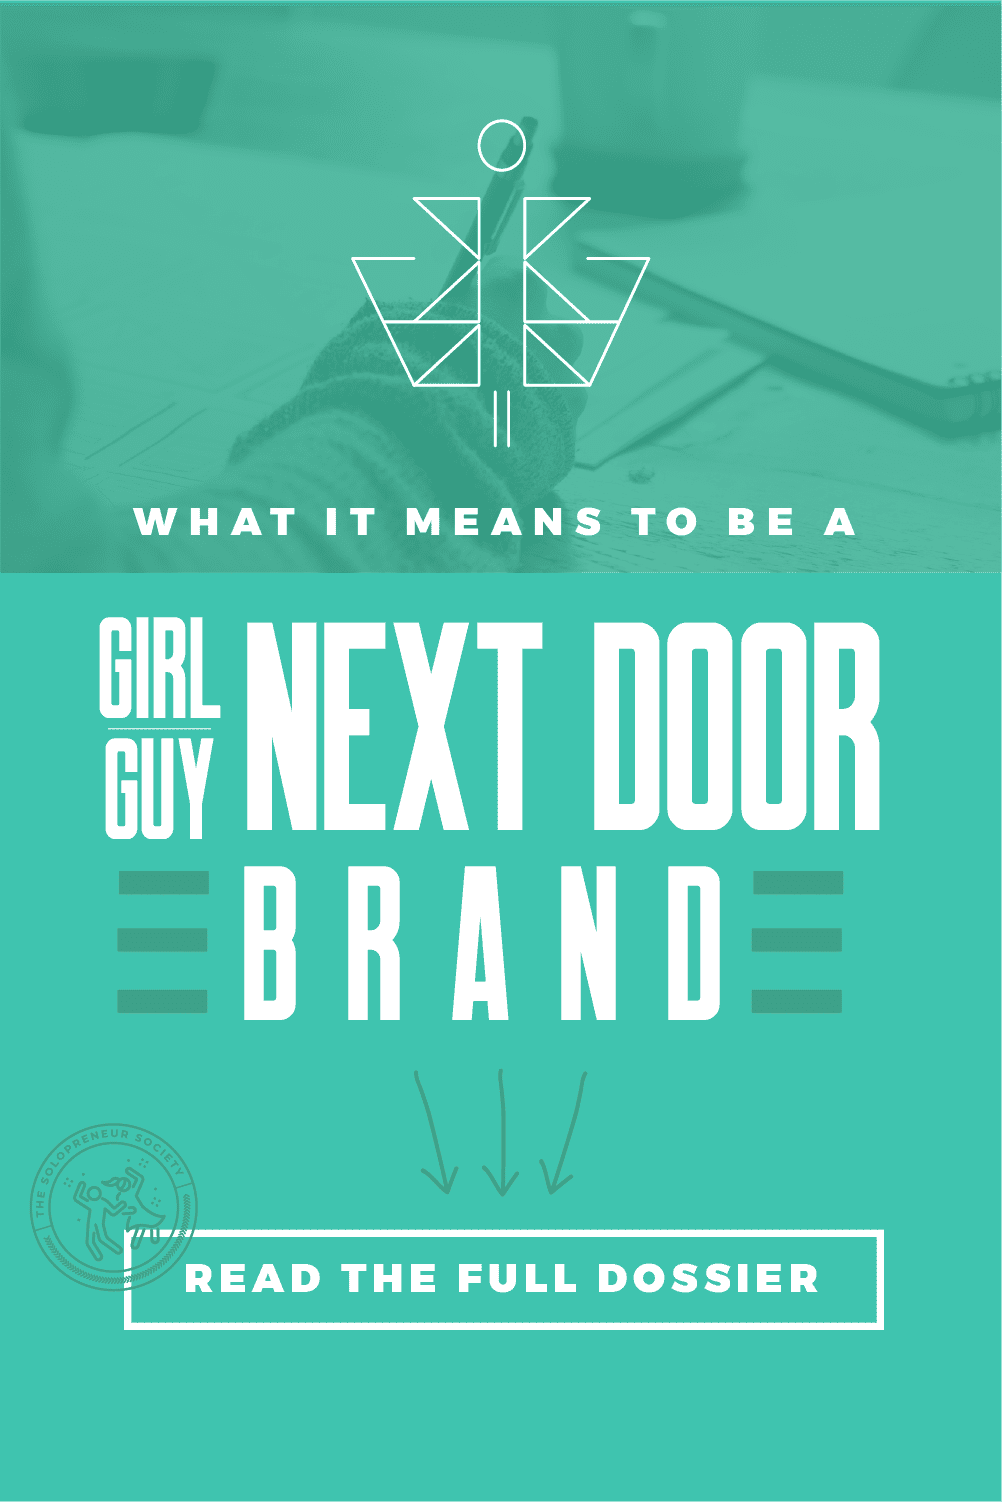 Girl/Guy Next Door Archetype Brand Personality